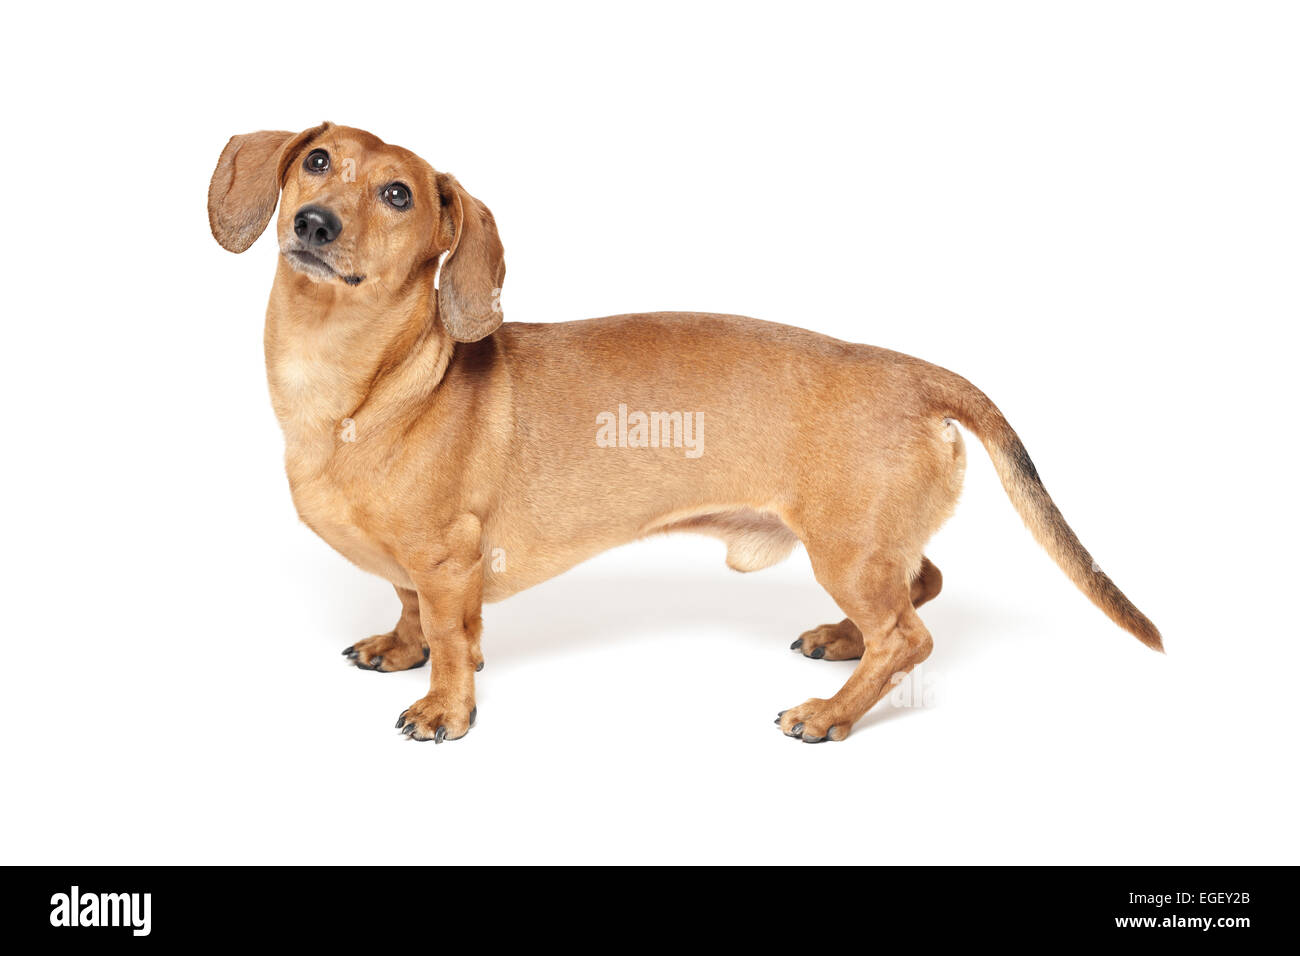 Carino marrone cane bassotto isolati su sfondo bianco Foto Stock